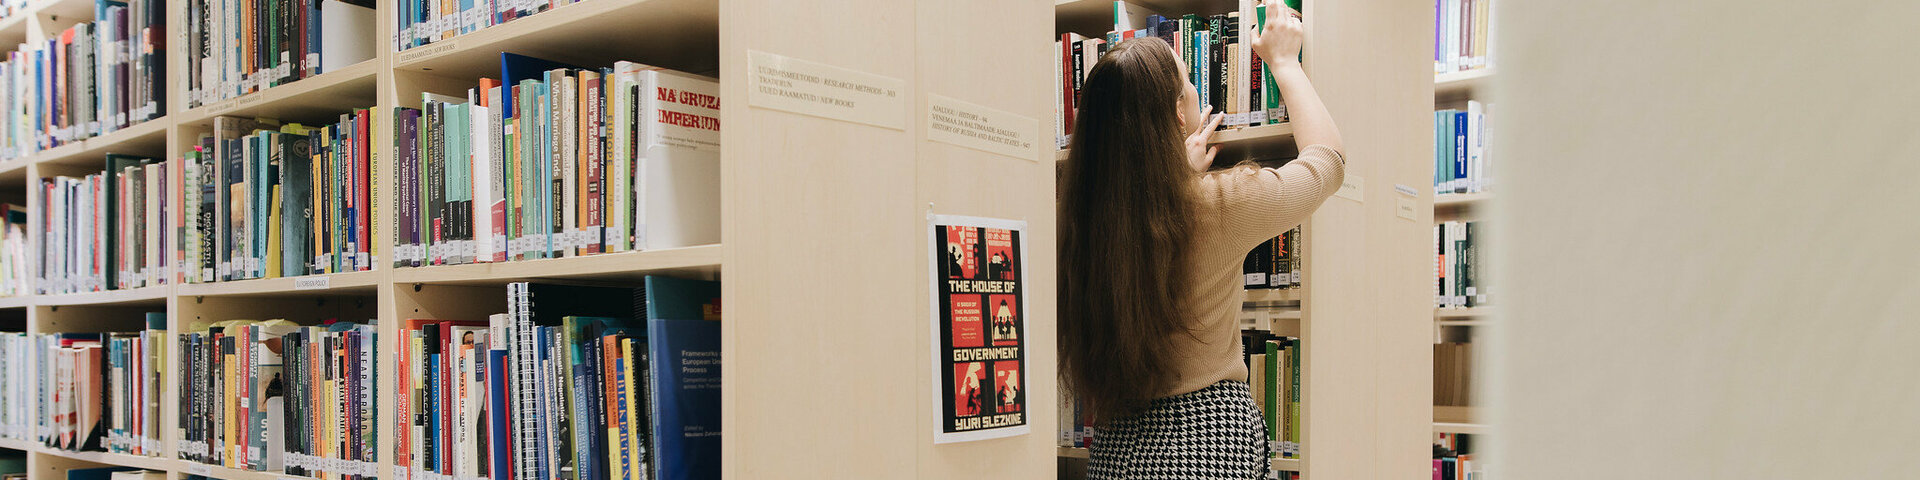 Üliõpilane raamatukogus. Autor: Andero Kalju